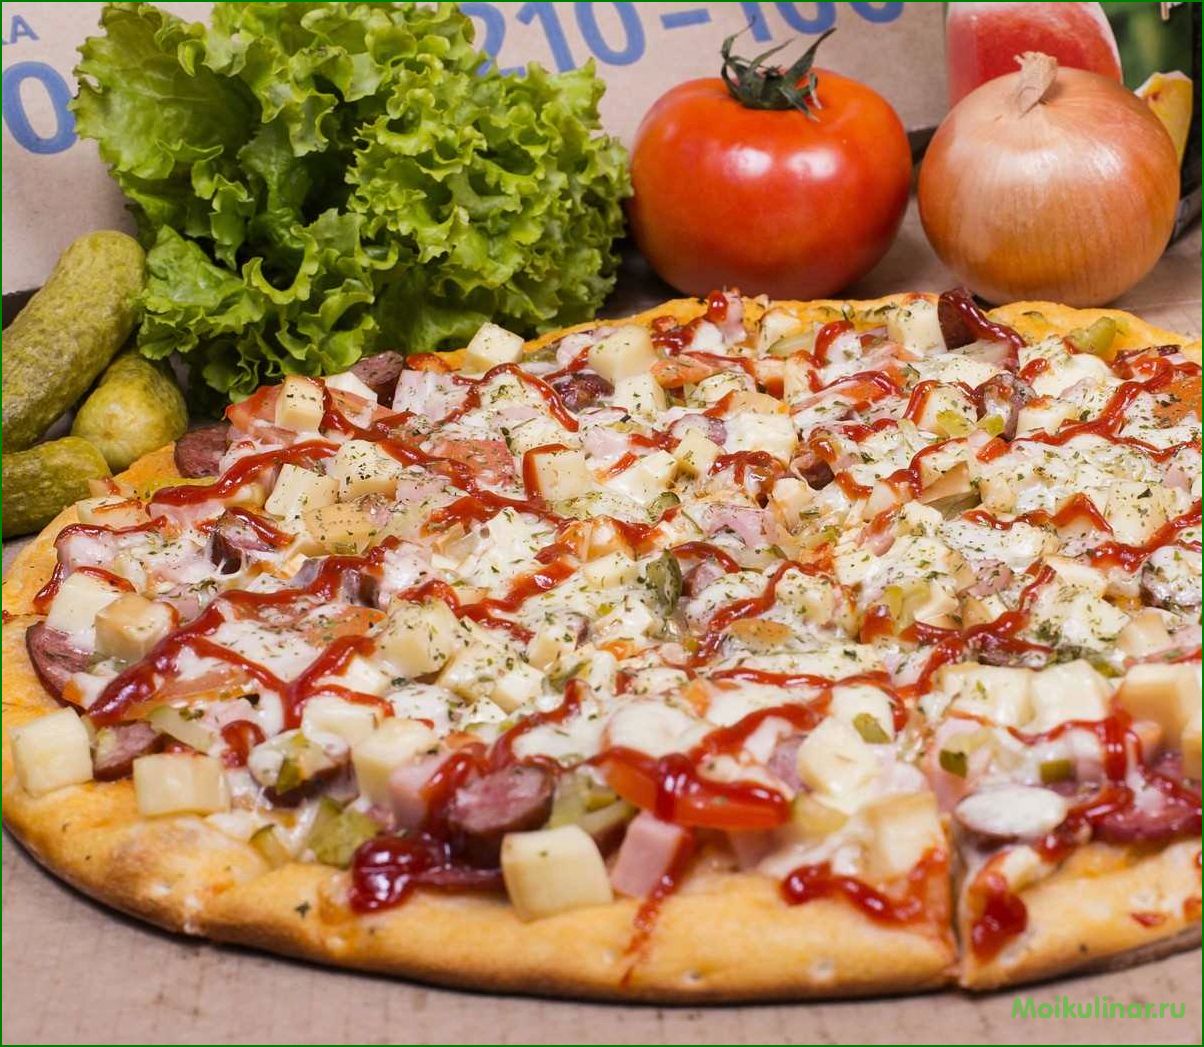 Доставка свежей и вкусной пиццы прямо к вам домой — выбирайте из широкого ассортимента 